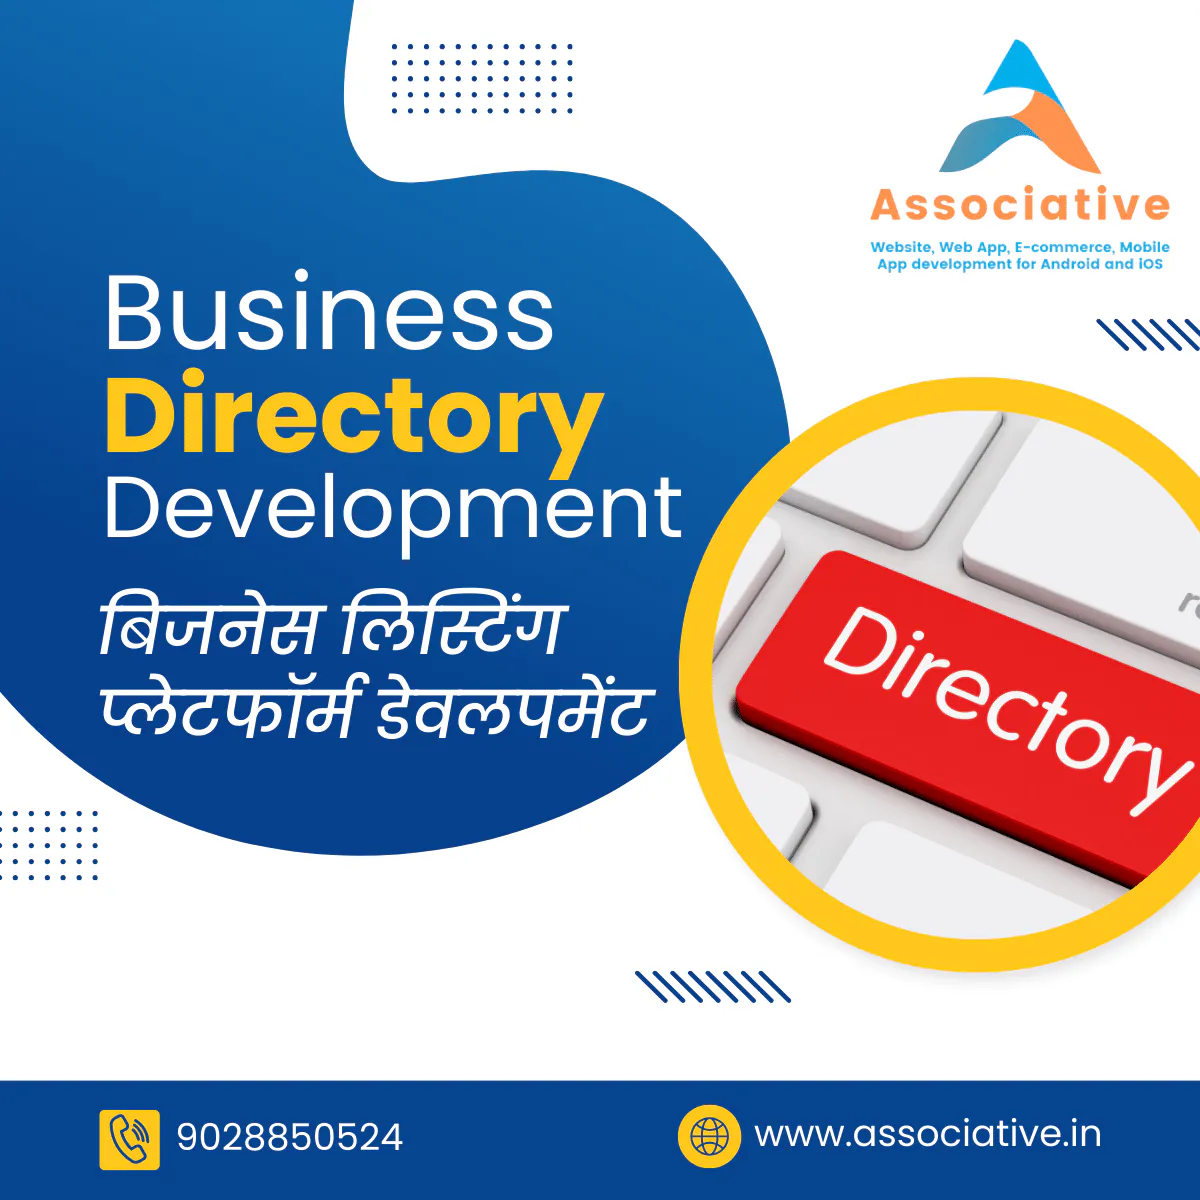 Business Directory Development